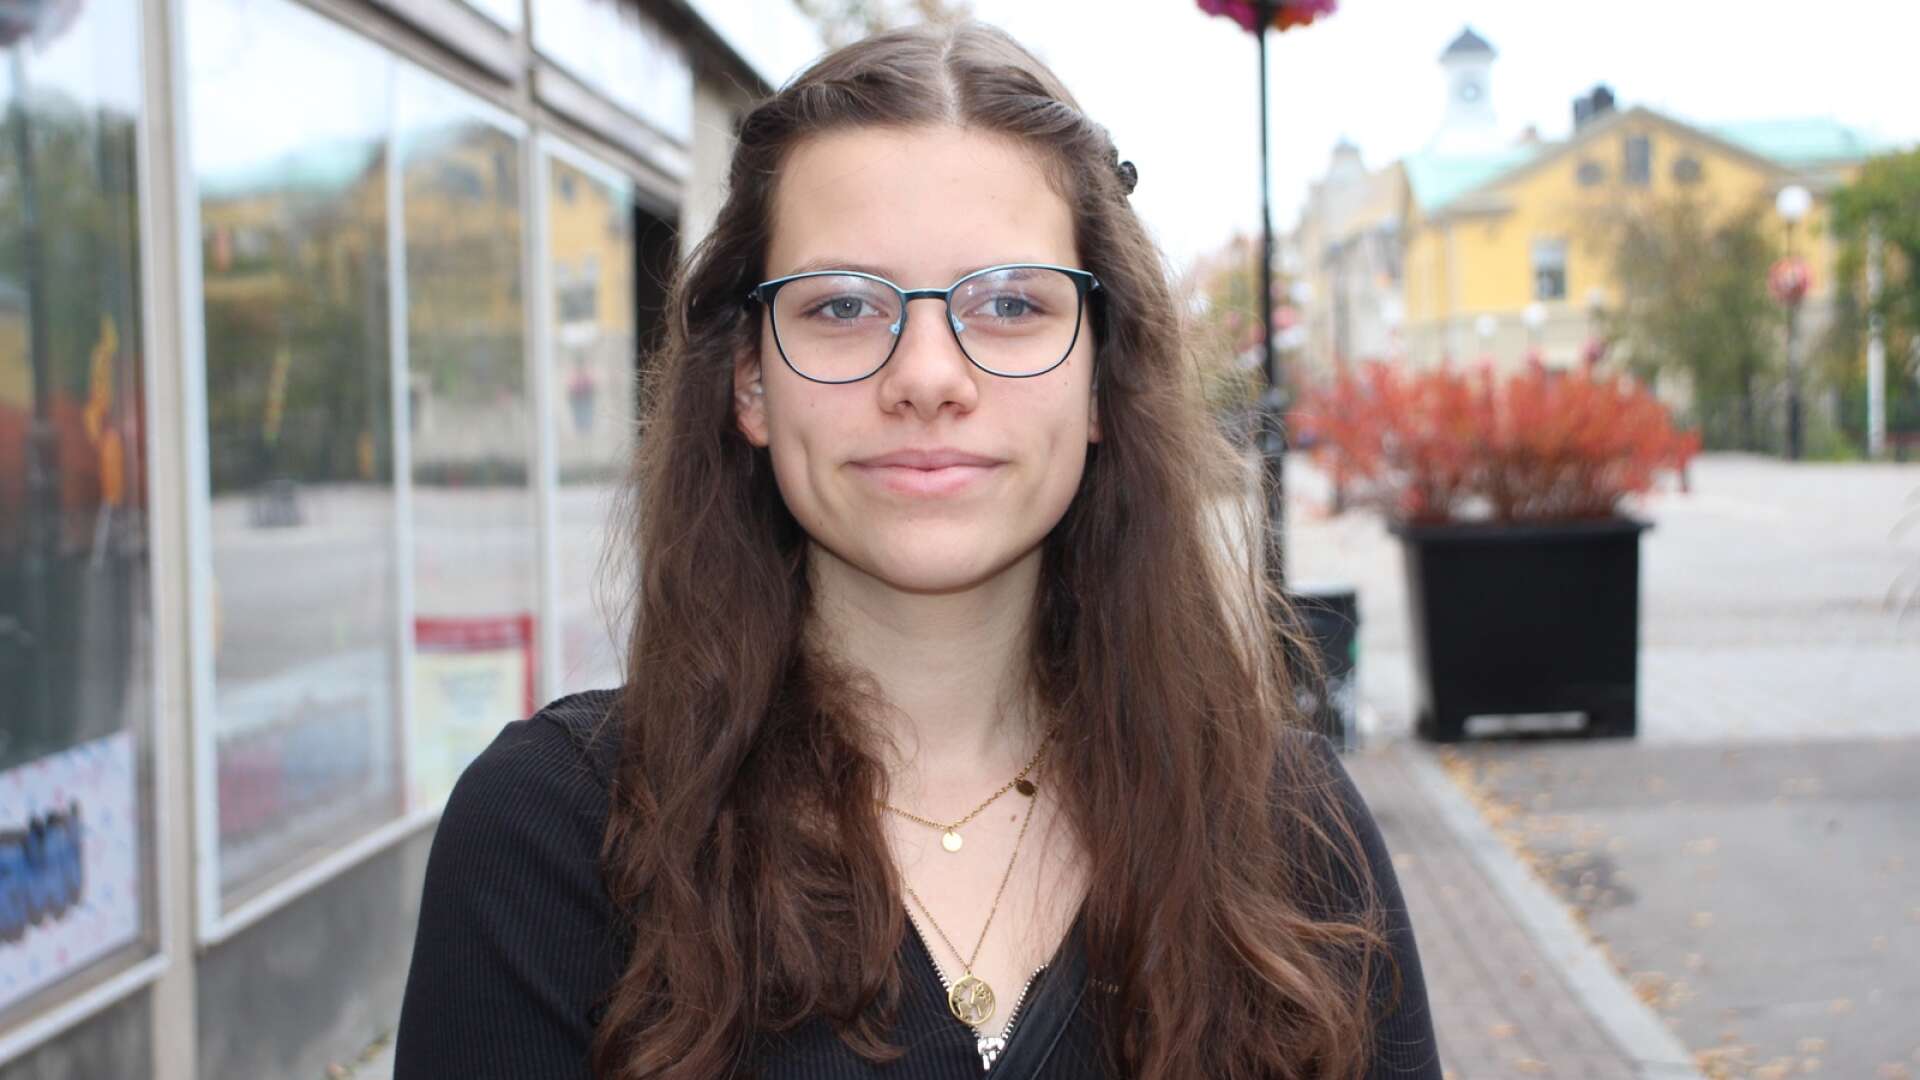 Anne-Sophie Schütz från Tyskland har väntat på ett svenskt personnummer sedan i april. Nu har hon äntligen fått det. 